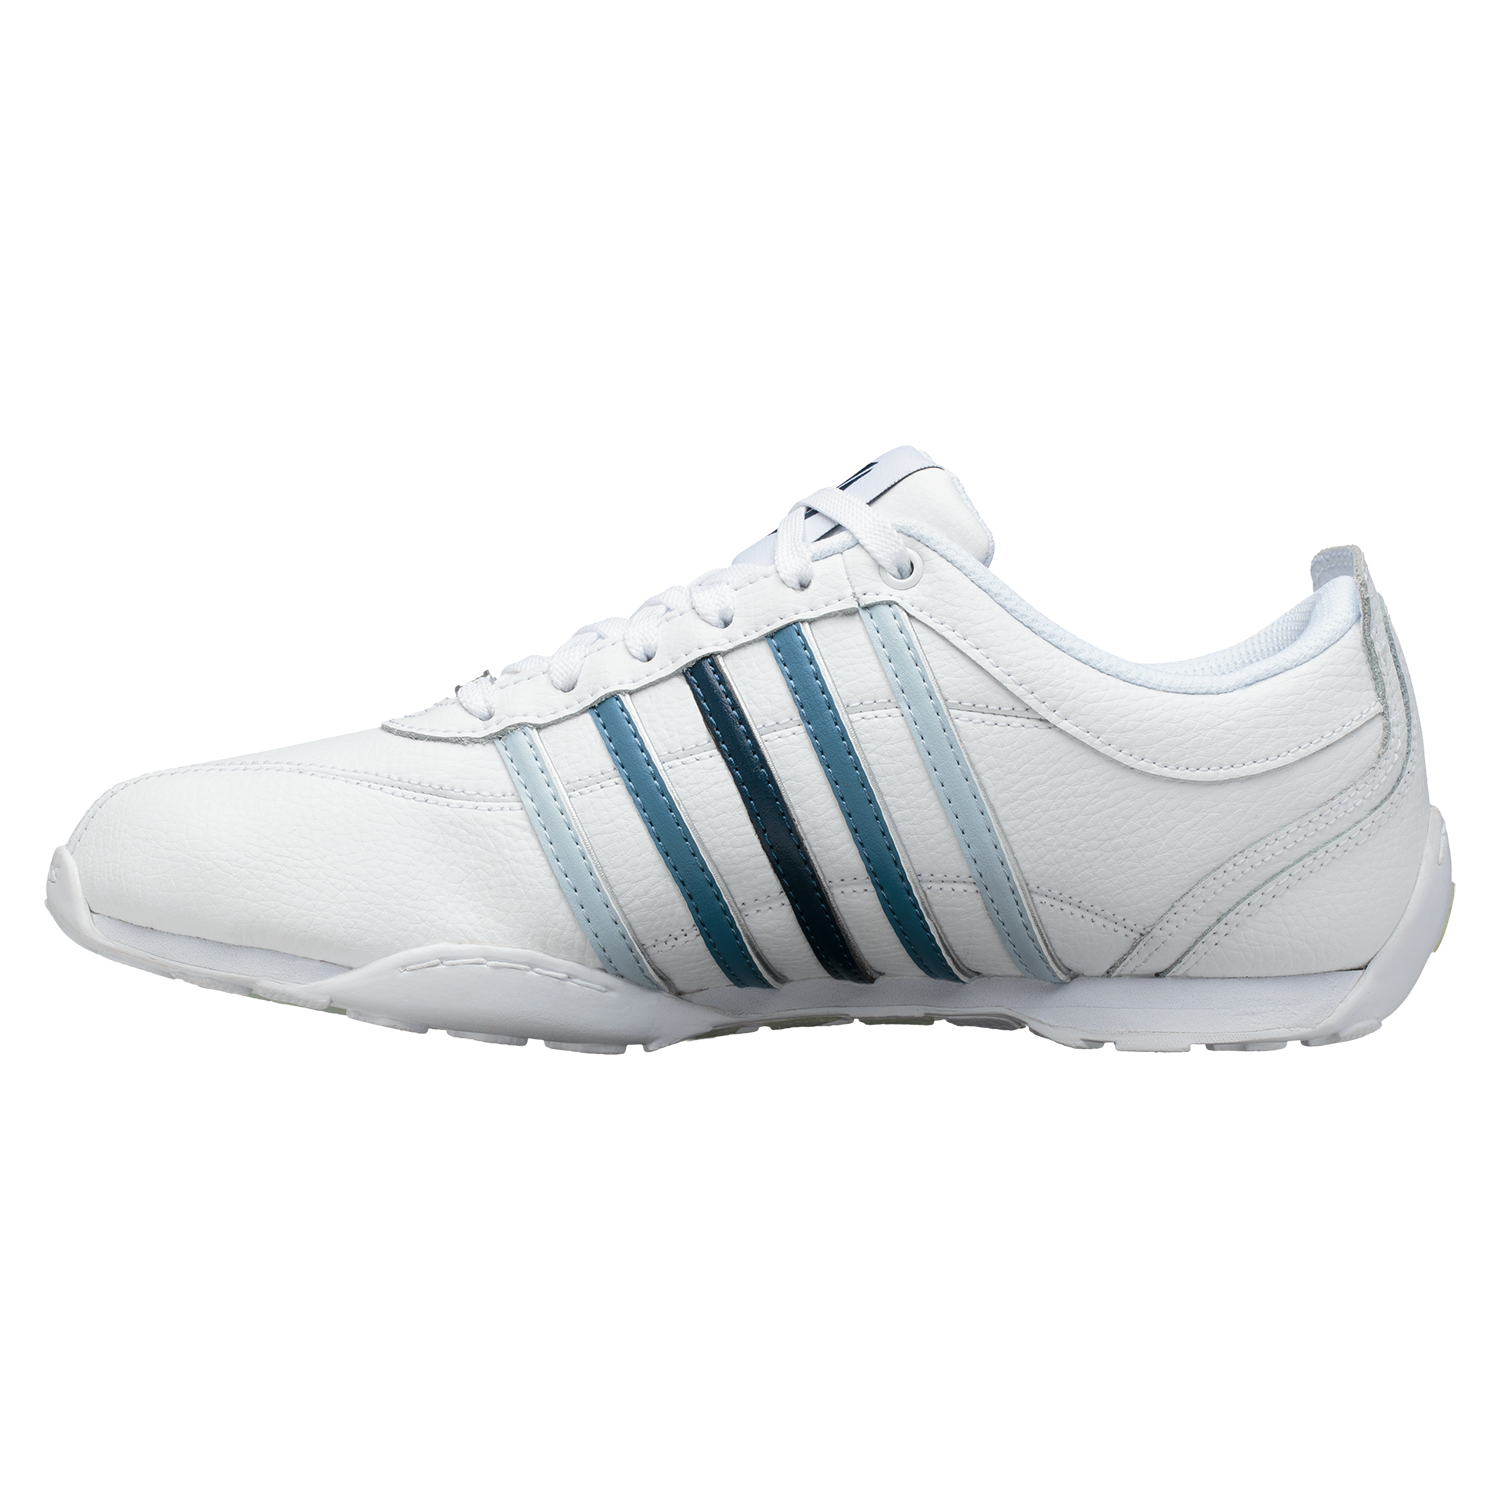 K-SWISS Arvee 1.5 Herren Sneaker Sportschuhe 02453-936-M Weiß / Blau 